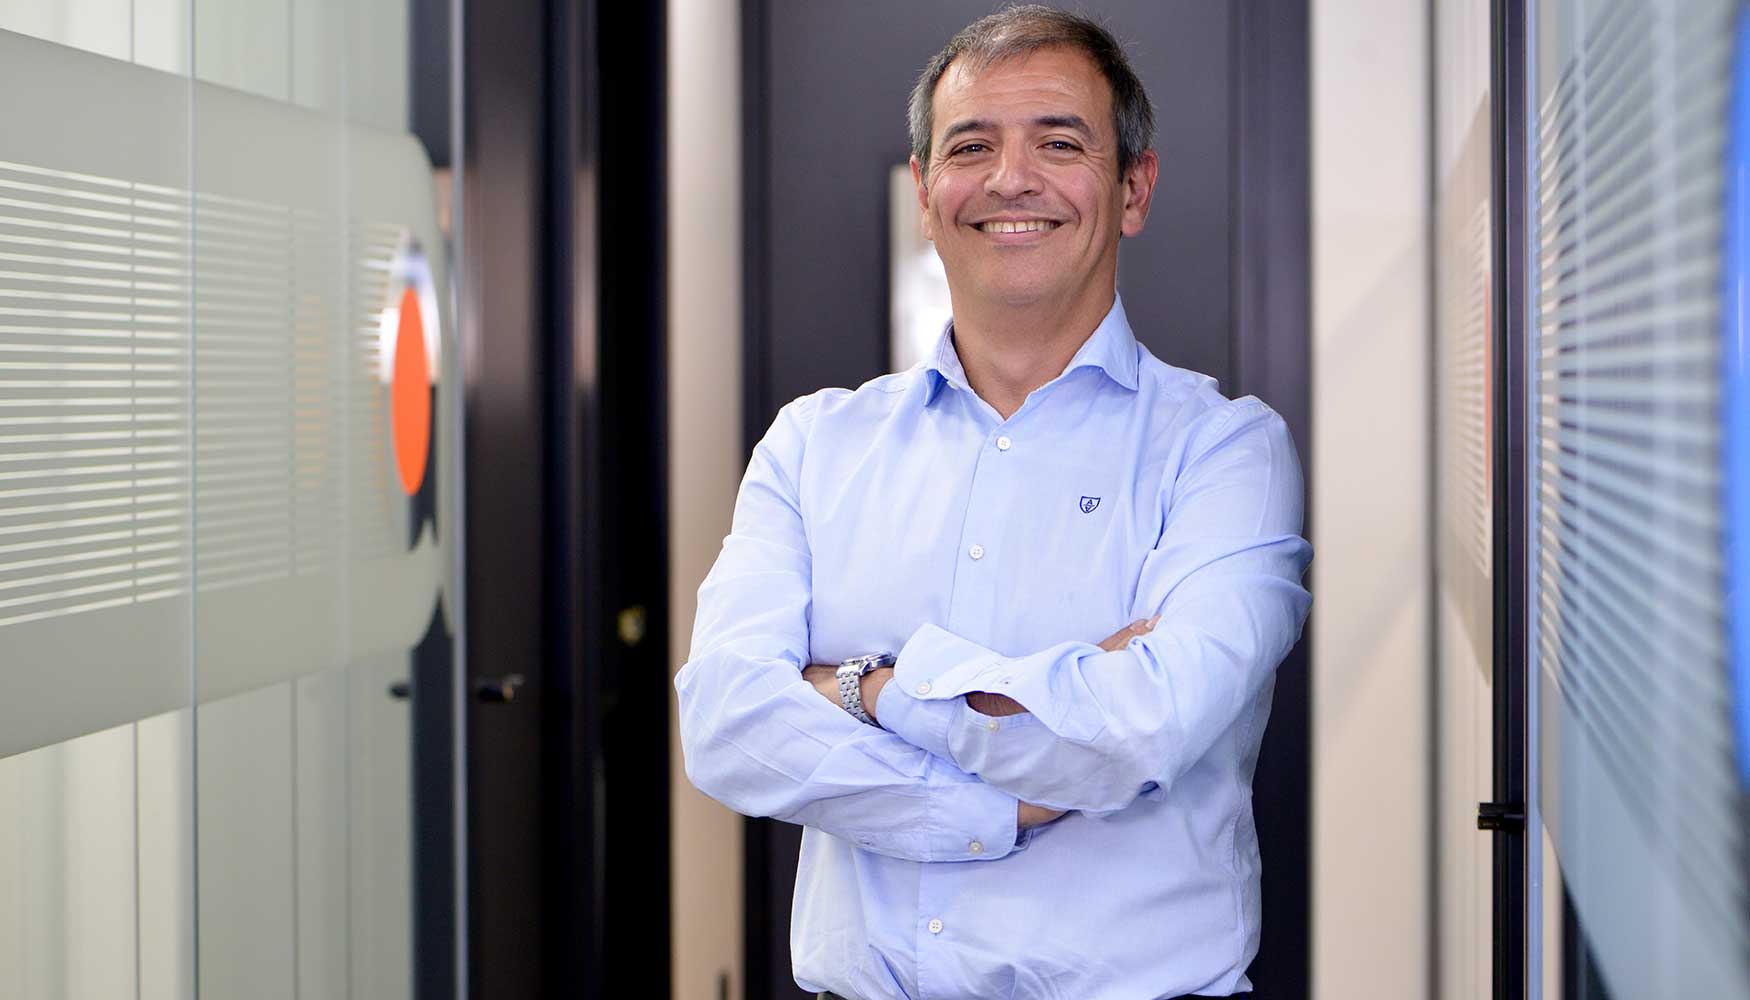 Julio Saz, BDM Infraestructures & Cloud Services de Alhambra TI